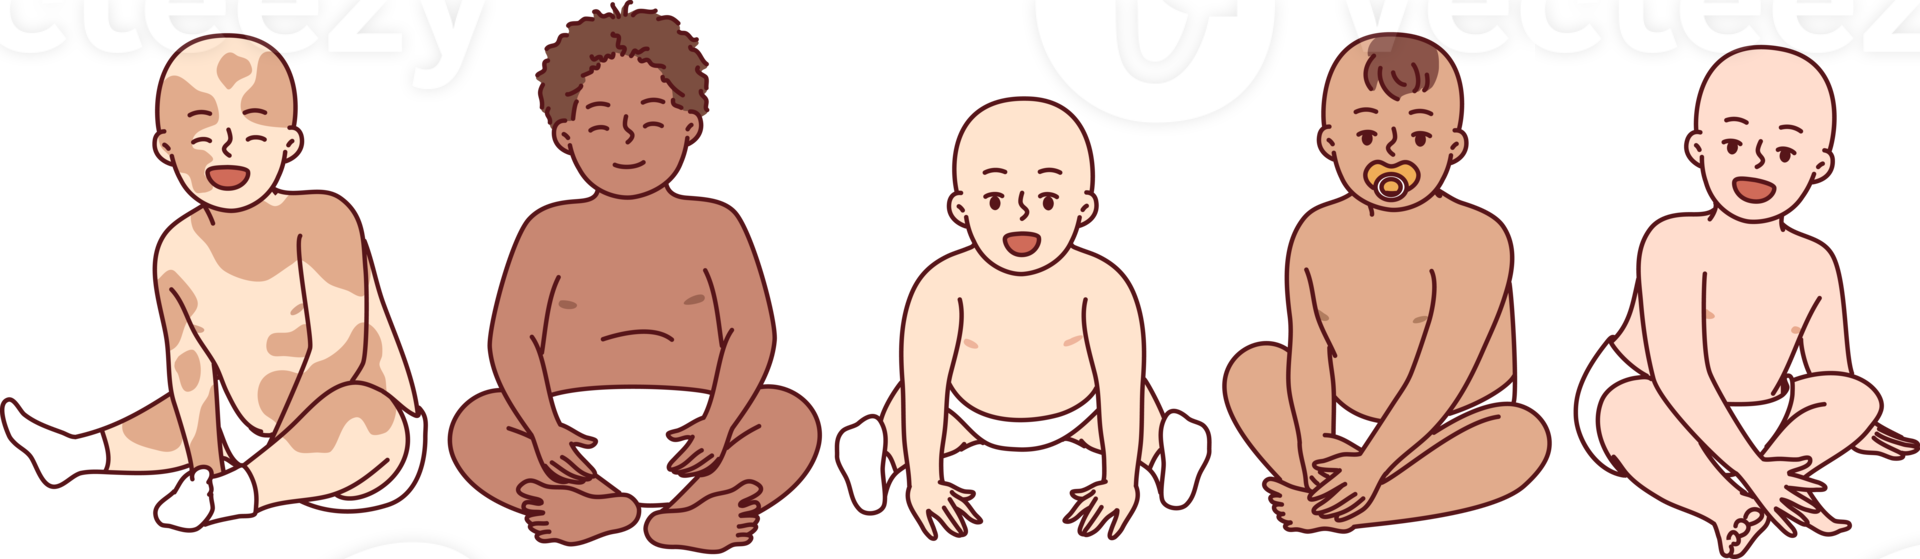 diverso bebês dentro fraldas do diferente raças e nacionalidades sentar lado de lado png